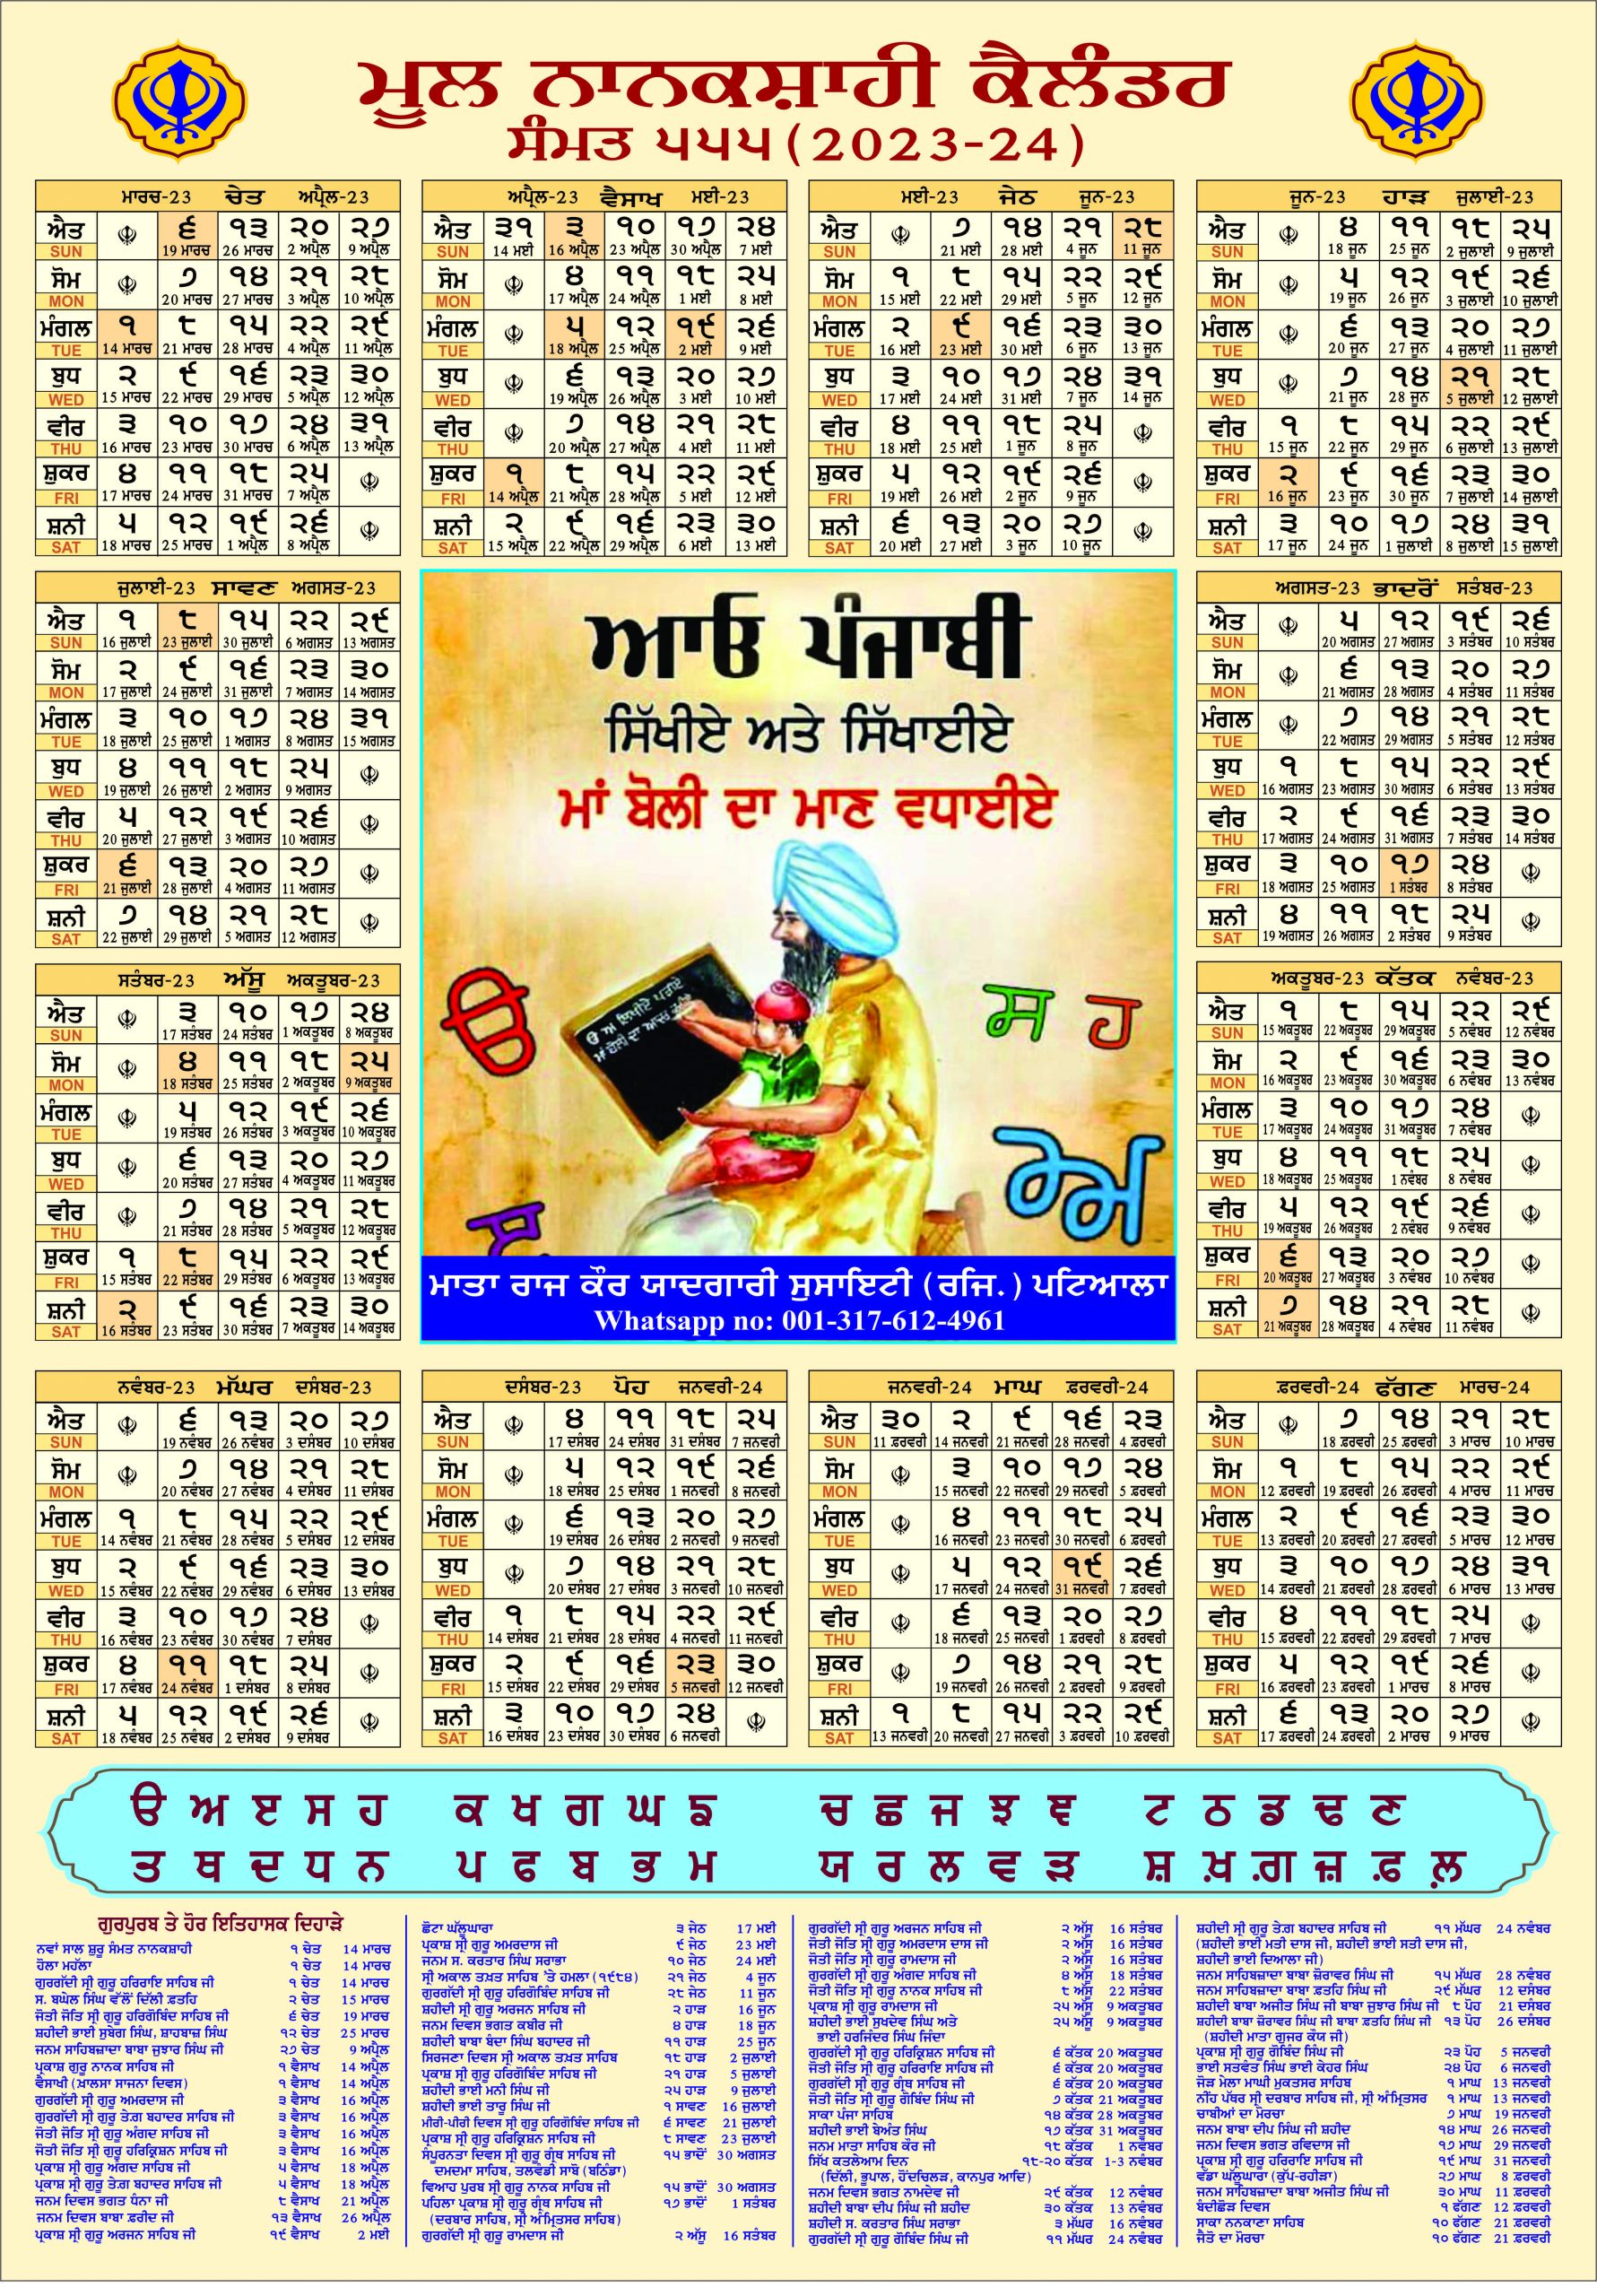 mool-nanakshahi-calendar-the-original-sikh-calendar-based-on-gurbani-sikh-history-facts-and